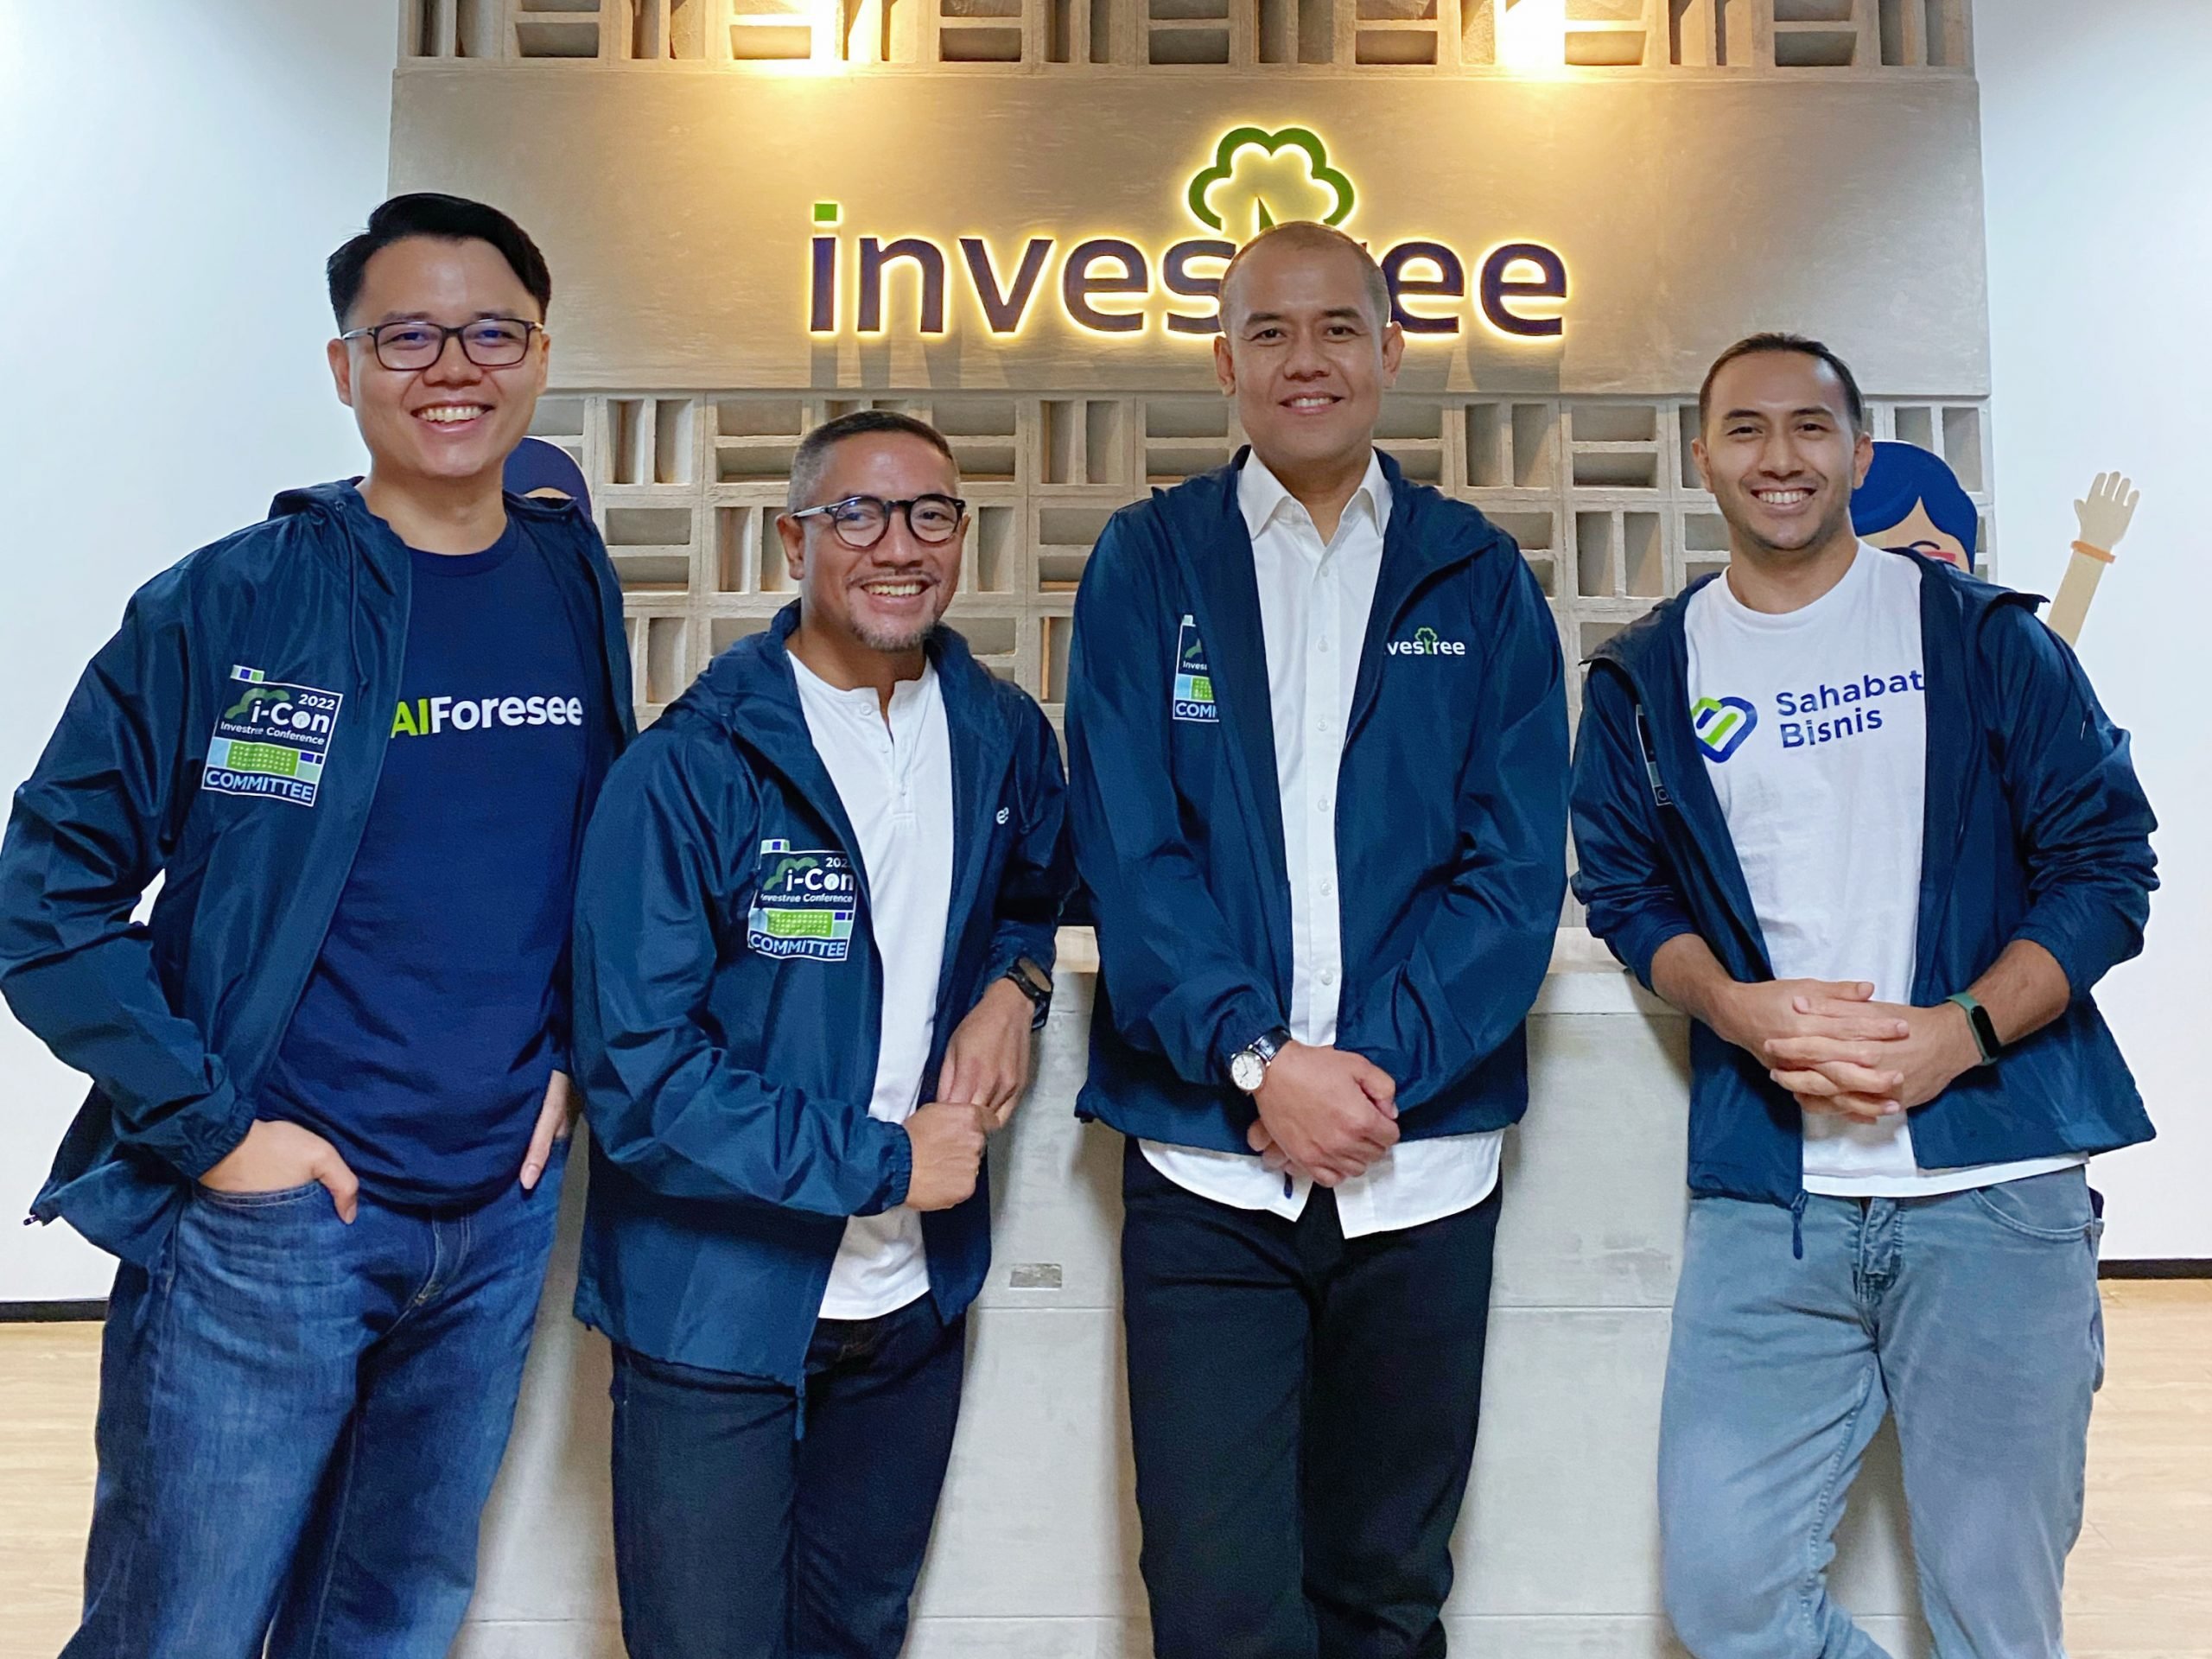 Investree Catat Pertumbuhan Positif Penyaluran Pinjaman untuk UMKM Kreatif serta Perkenalkan Sahabat Bisnis dan AIForesee sebagai Bagian Investree Group